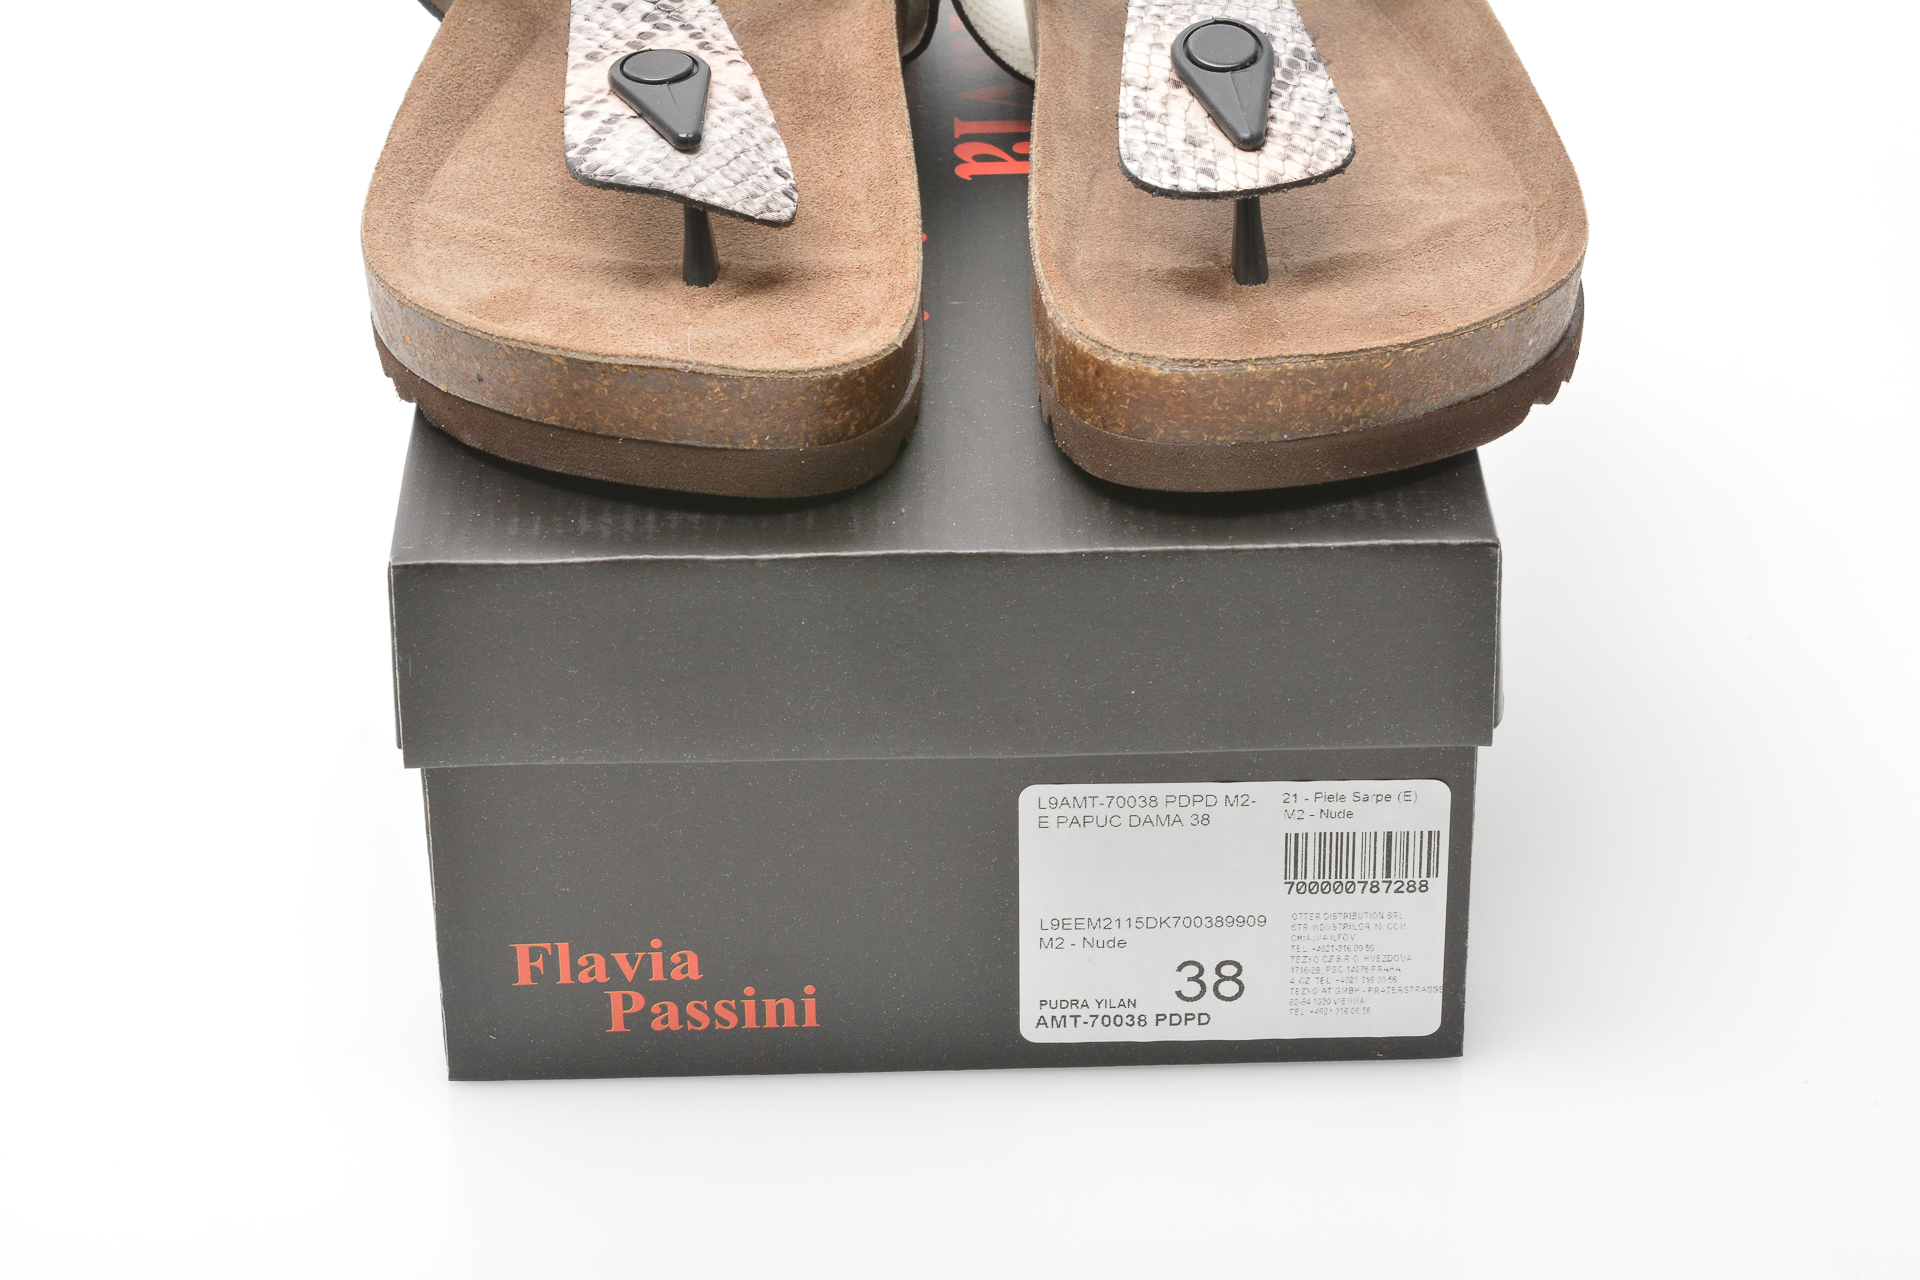 Papuci FLAVIA PASSINI gri, 70038, din piele naturala Flavia Passini imagine reduceri